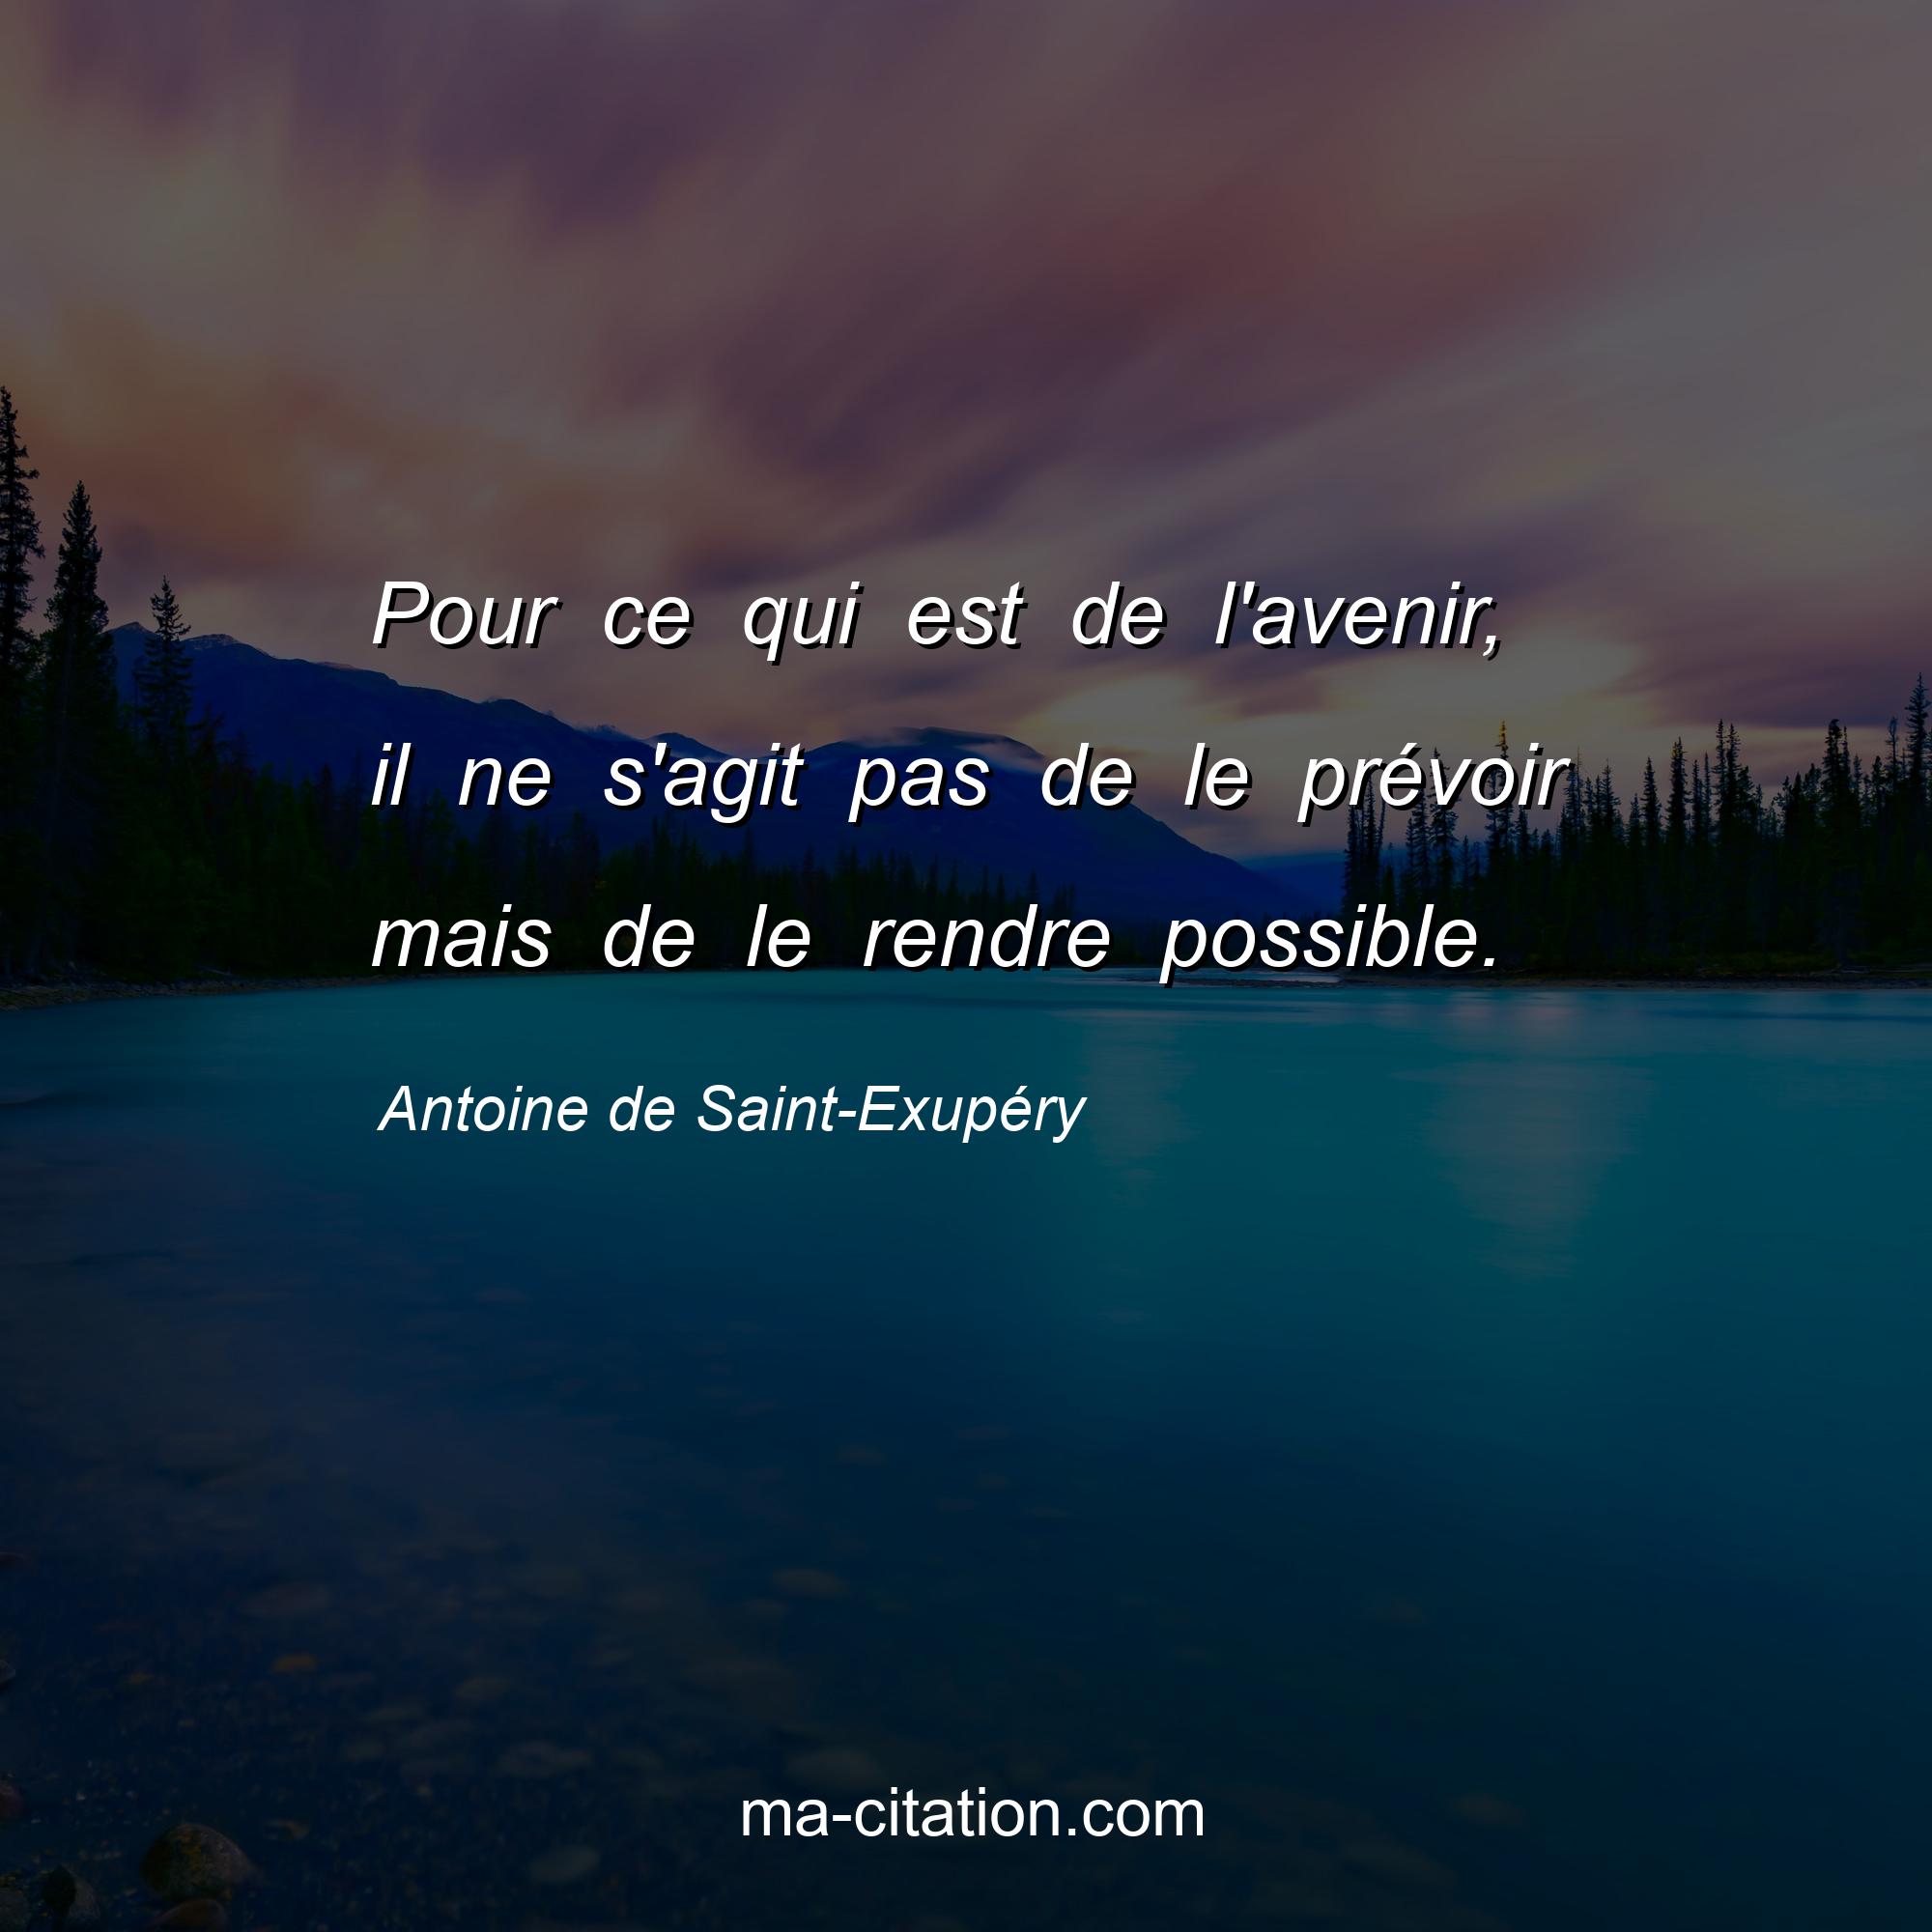 Antoine de Saint-Exupéry : Pour ce qui est de l'avenir, il ne s'agit pas de le prévoir mais de le rendre possible.